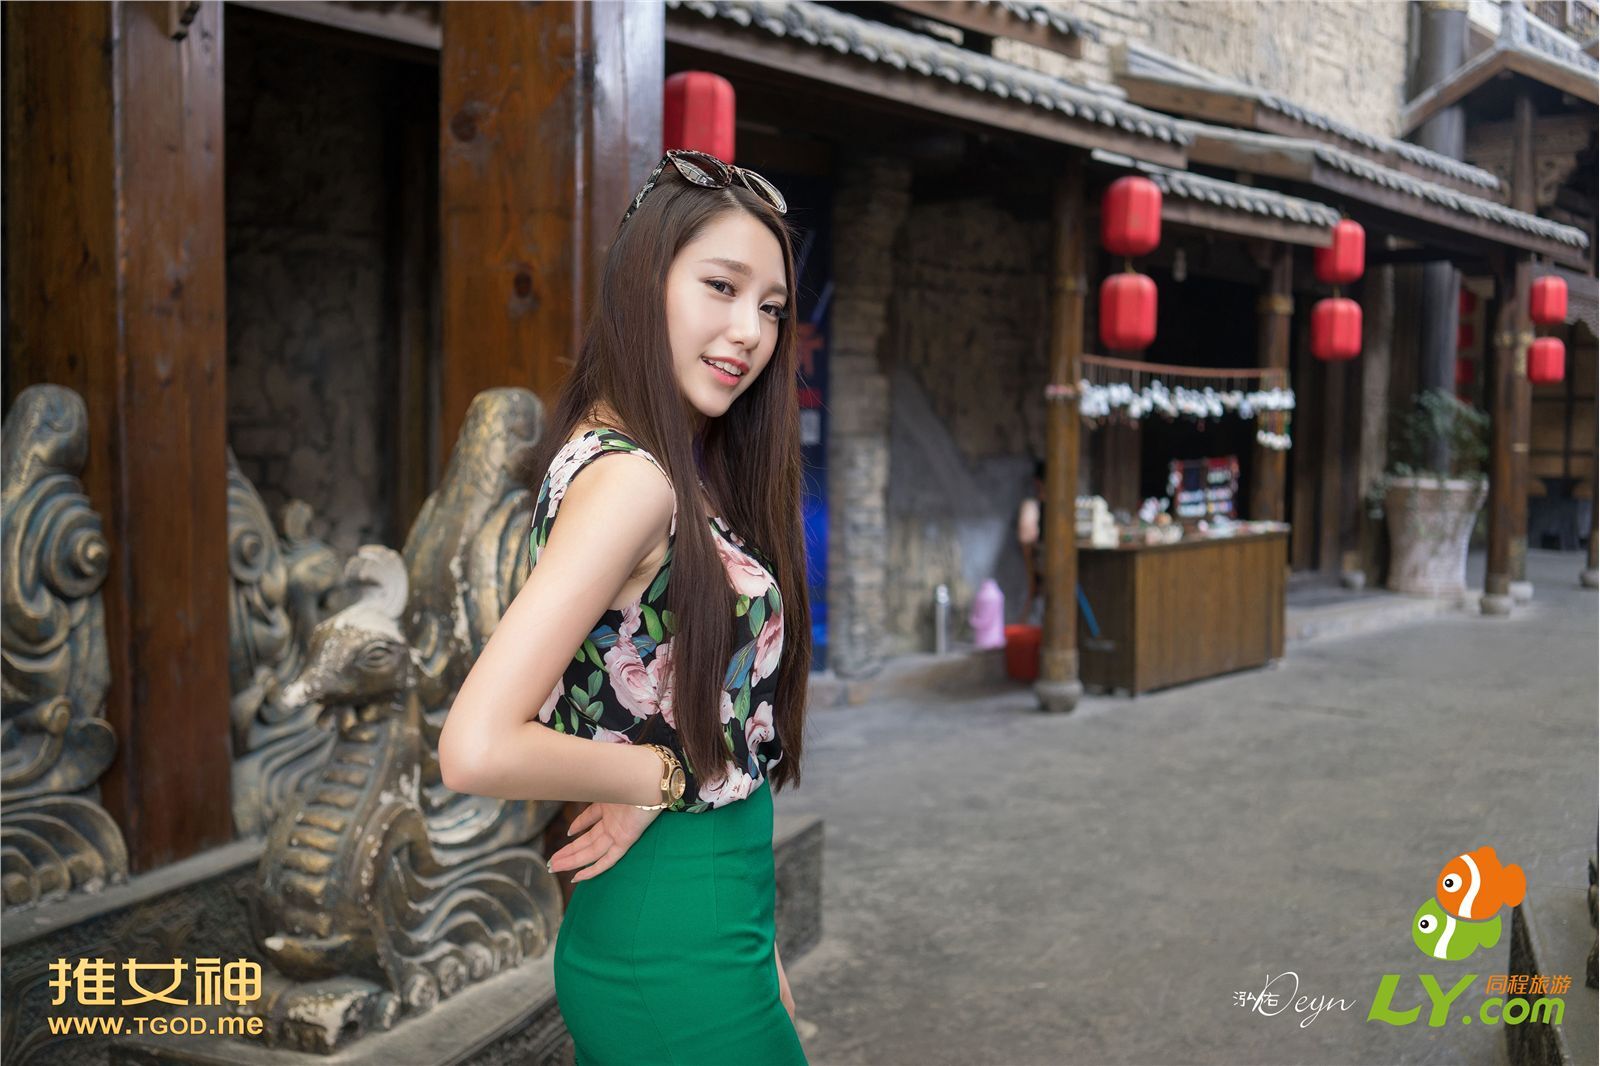 [tgod push goddess] 2014.09.17 Liu Yining Lynn